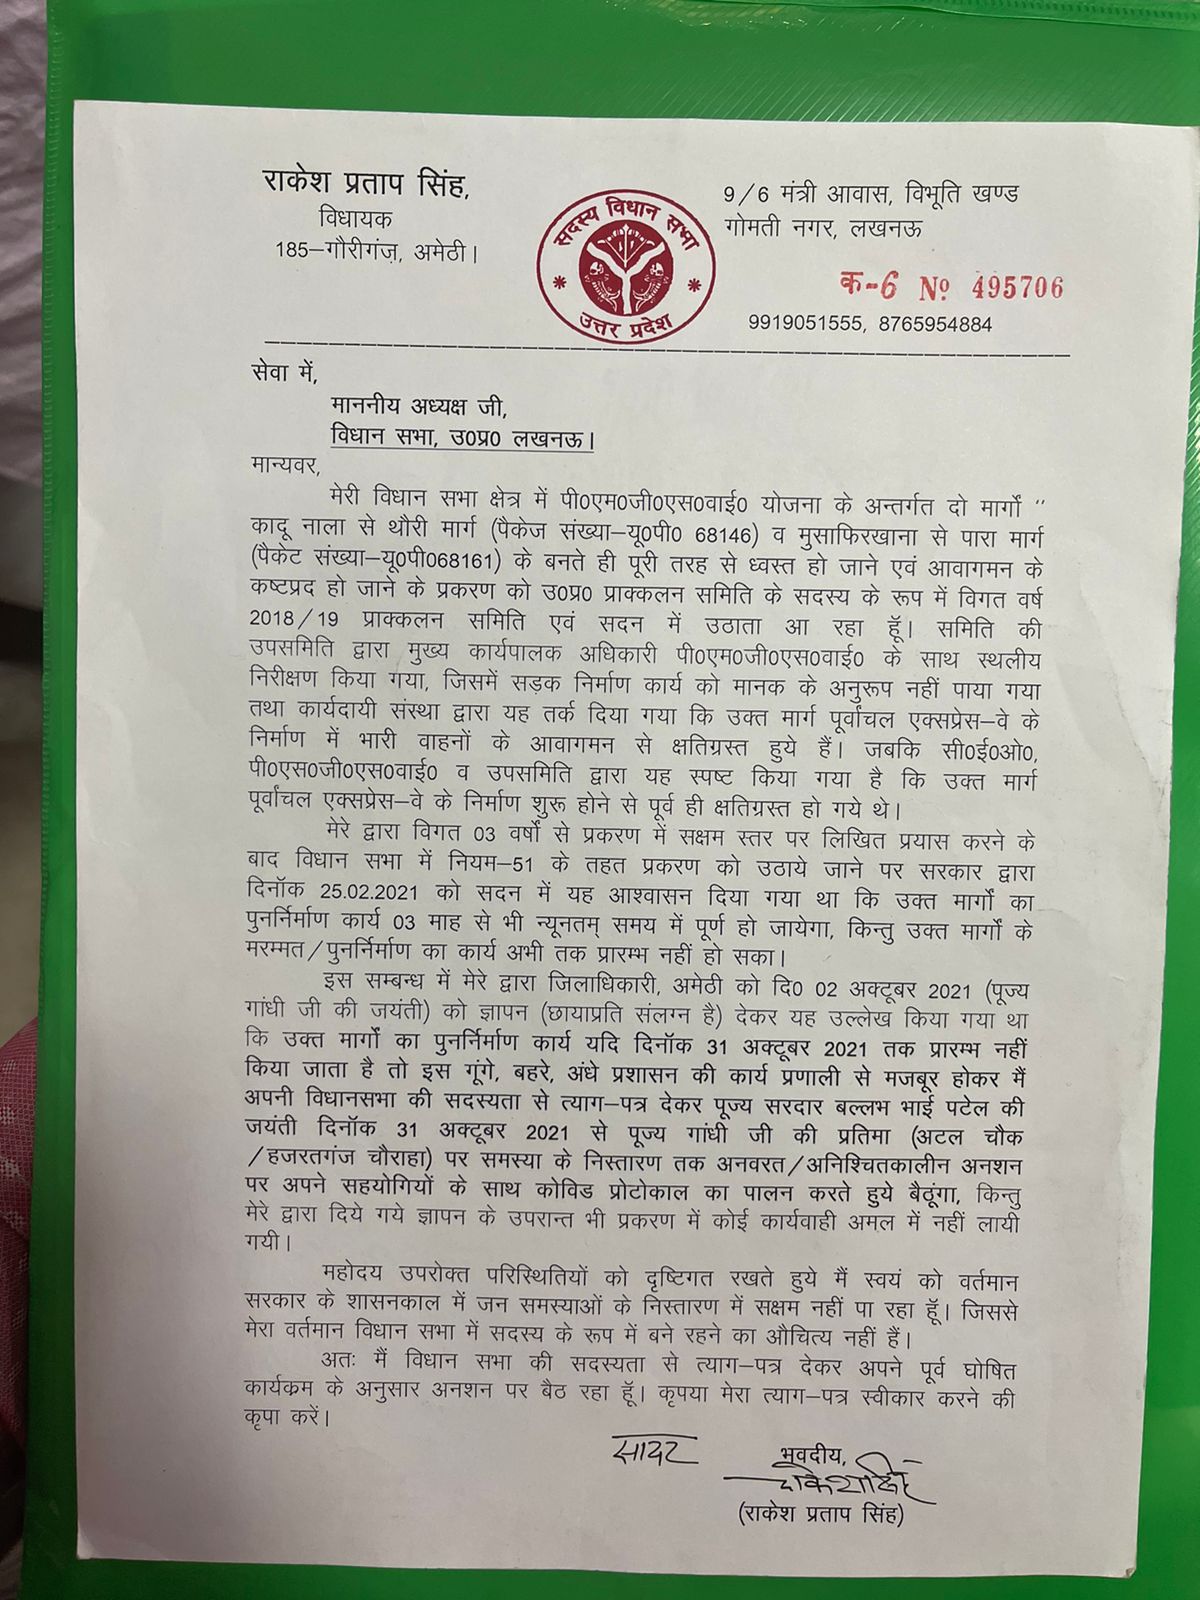 सपा विधायक राकेश प्रताप सिंह ने अपनी सदस्यता से दिया इस्तीफा